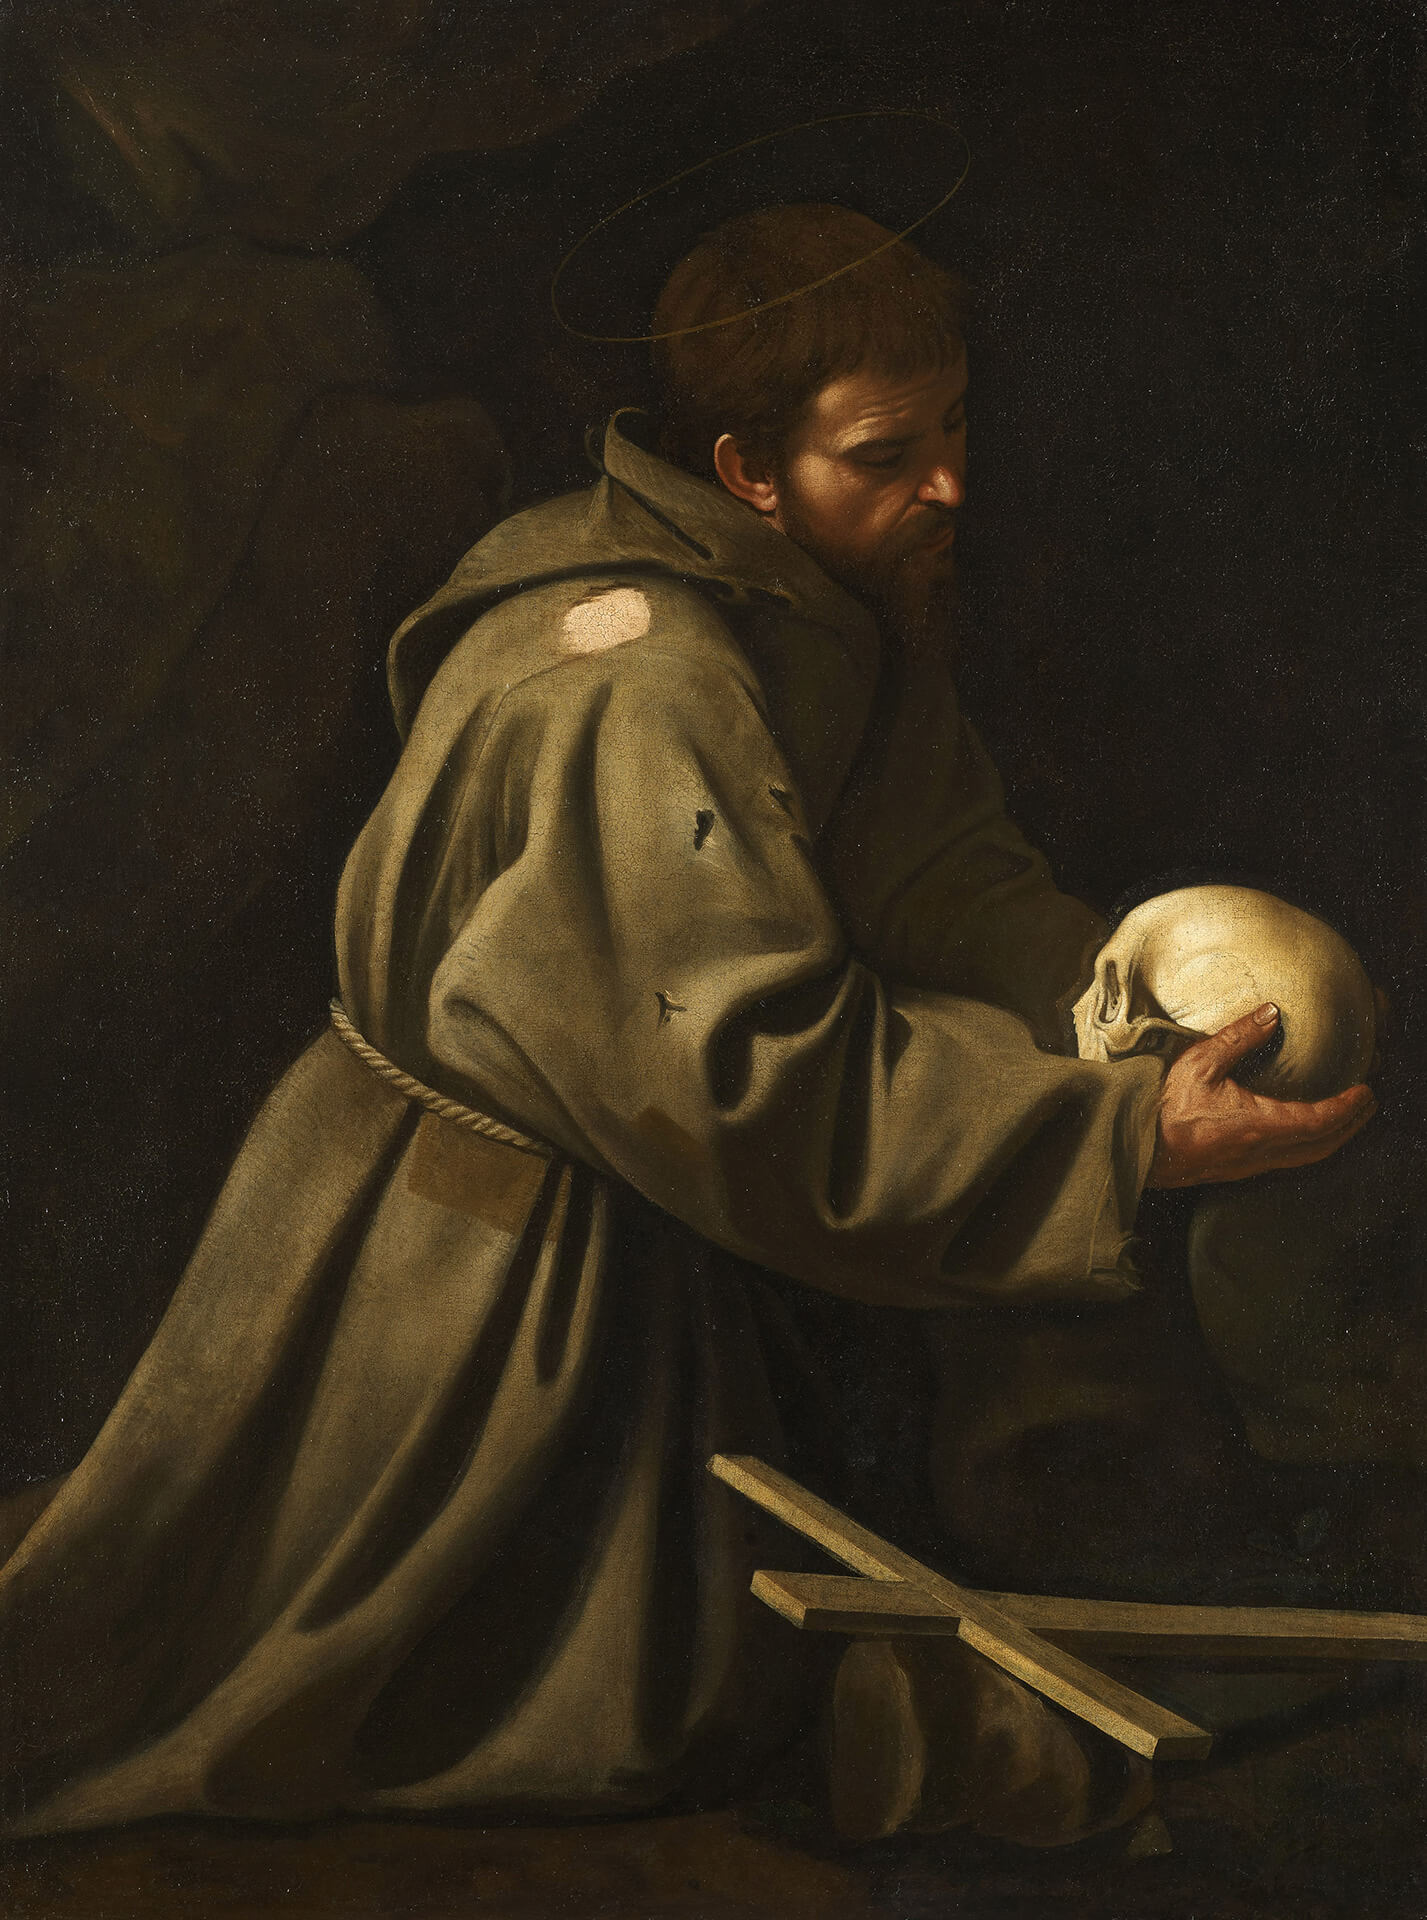 Michelangelo Merisi, called Caravaggio